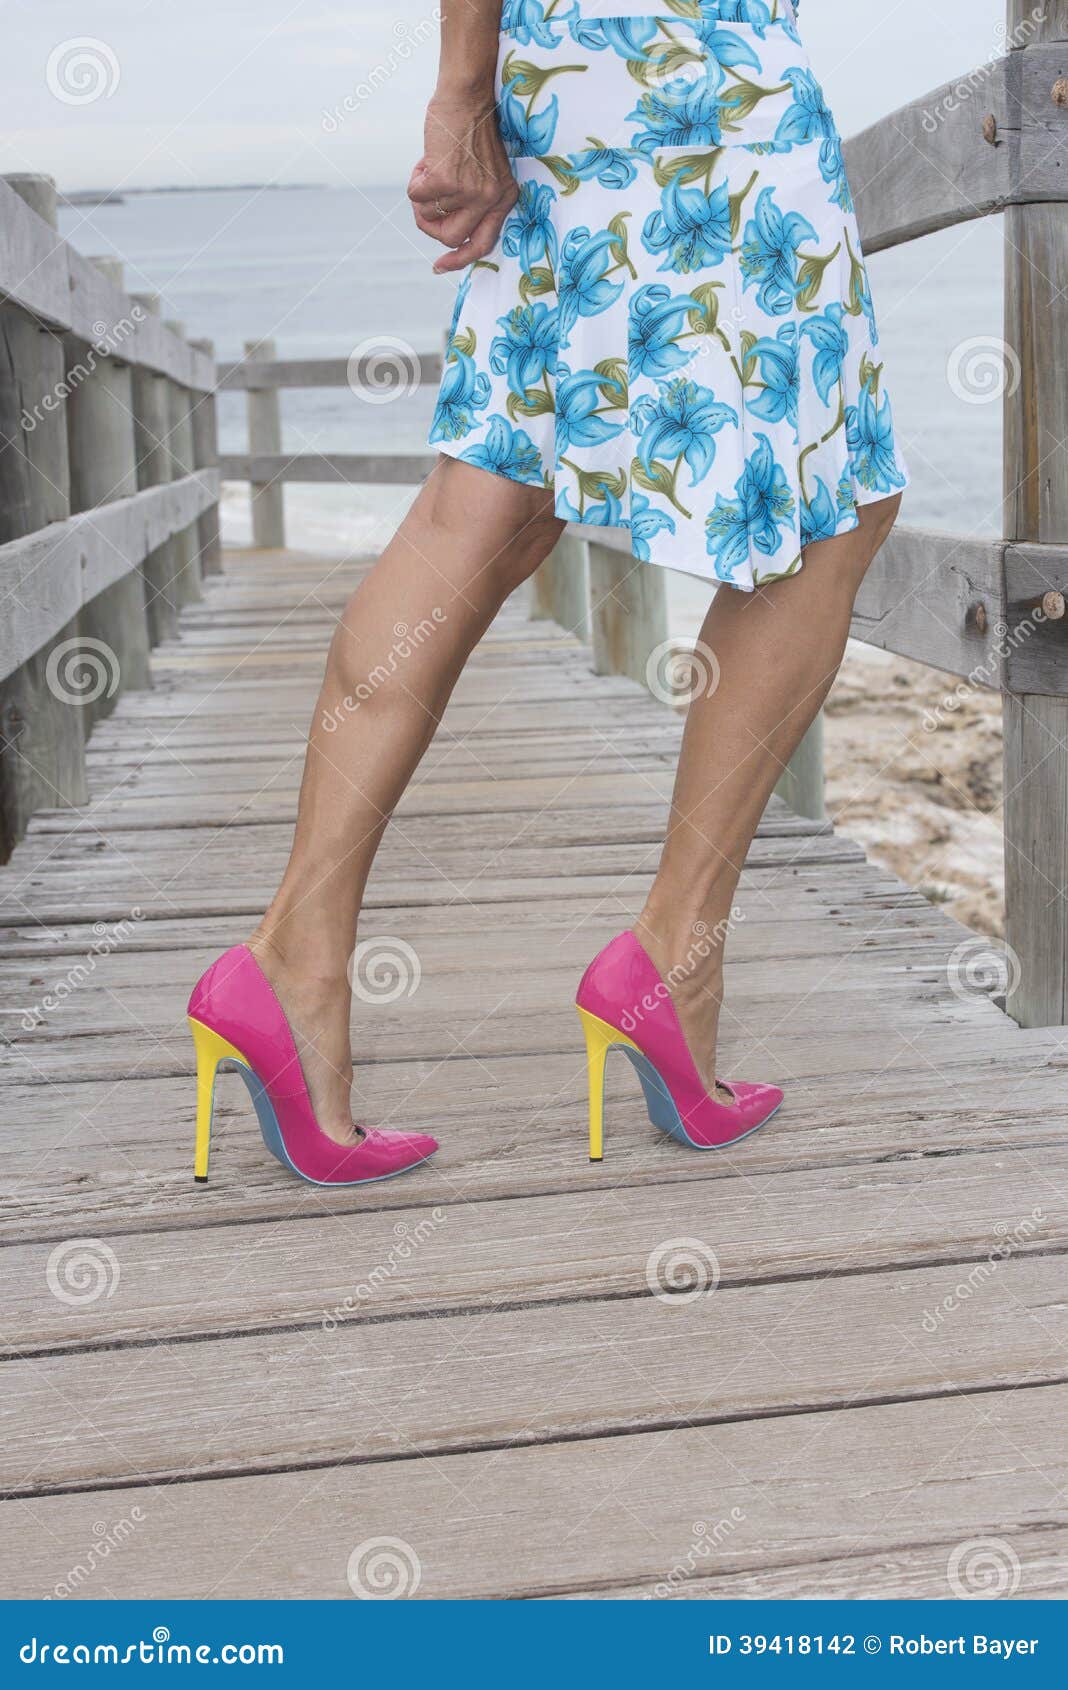 christine harrison share sexy older women in high heels photos